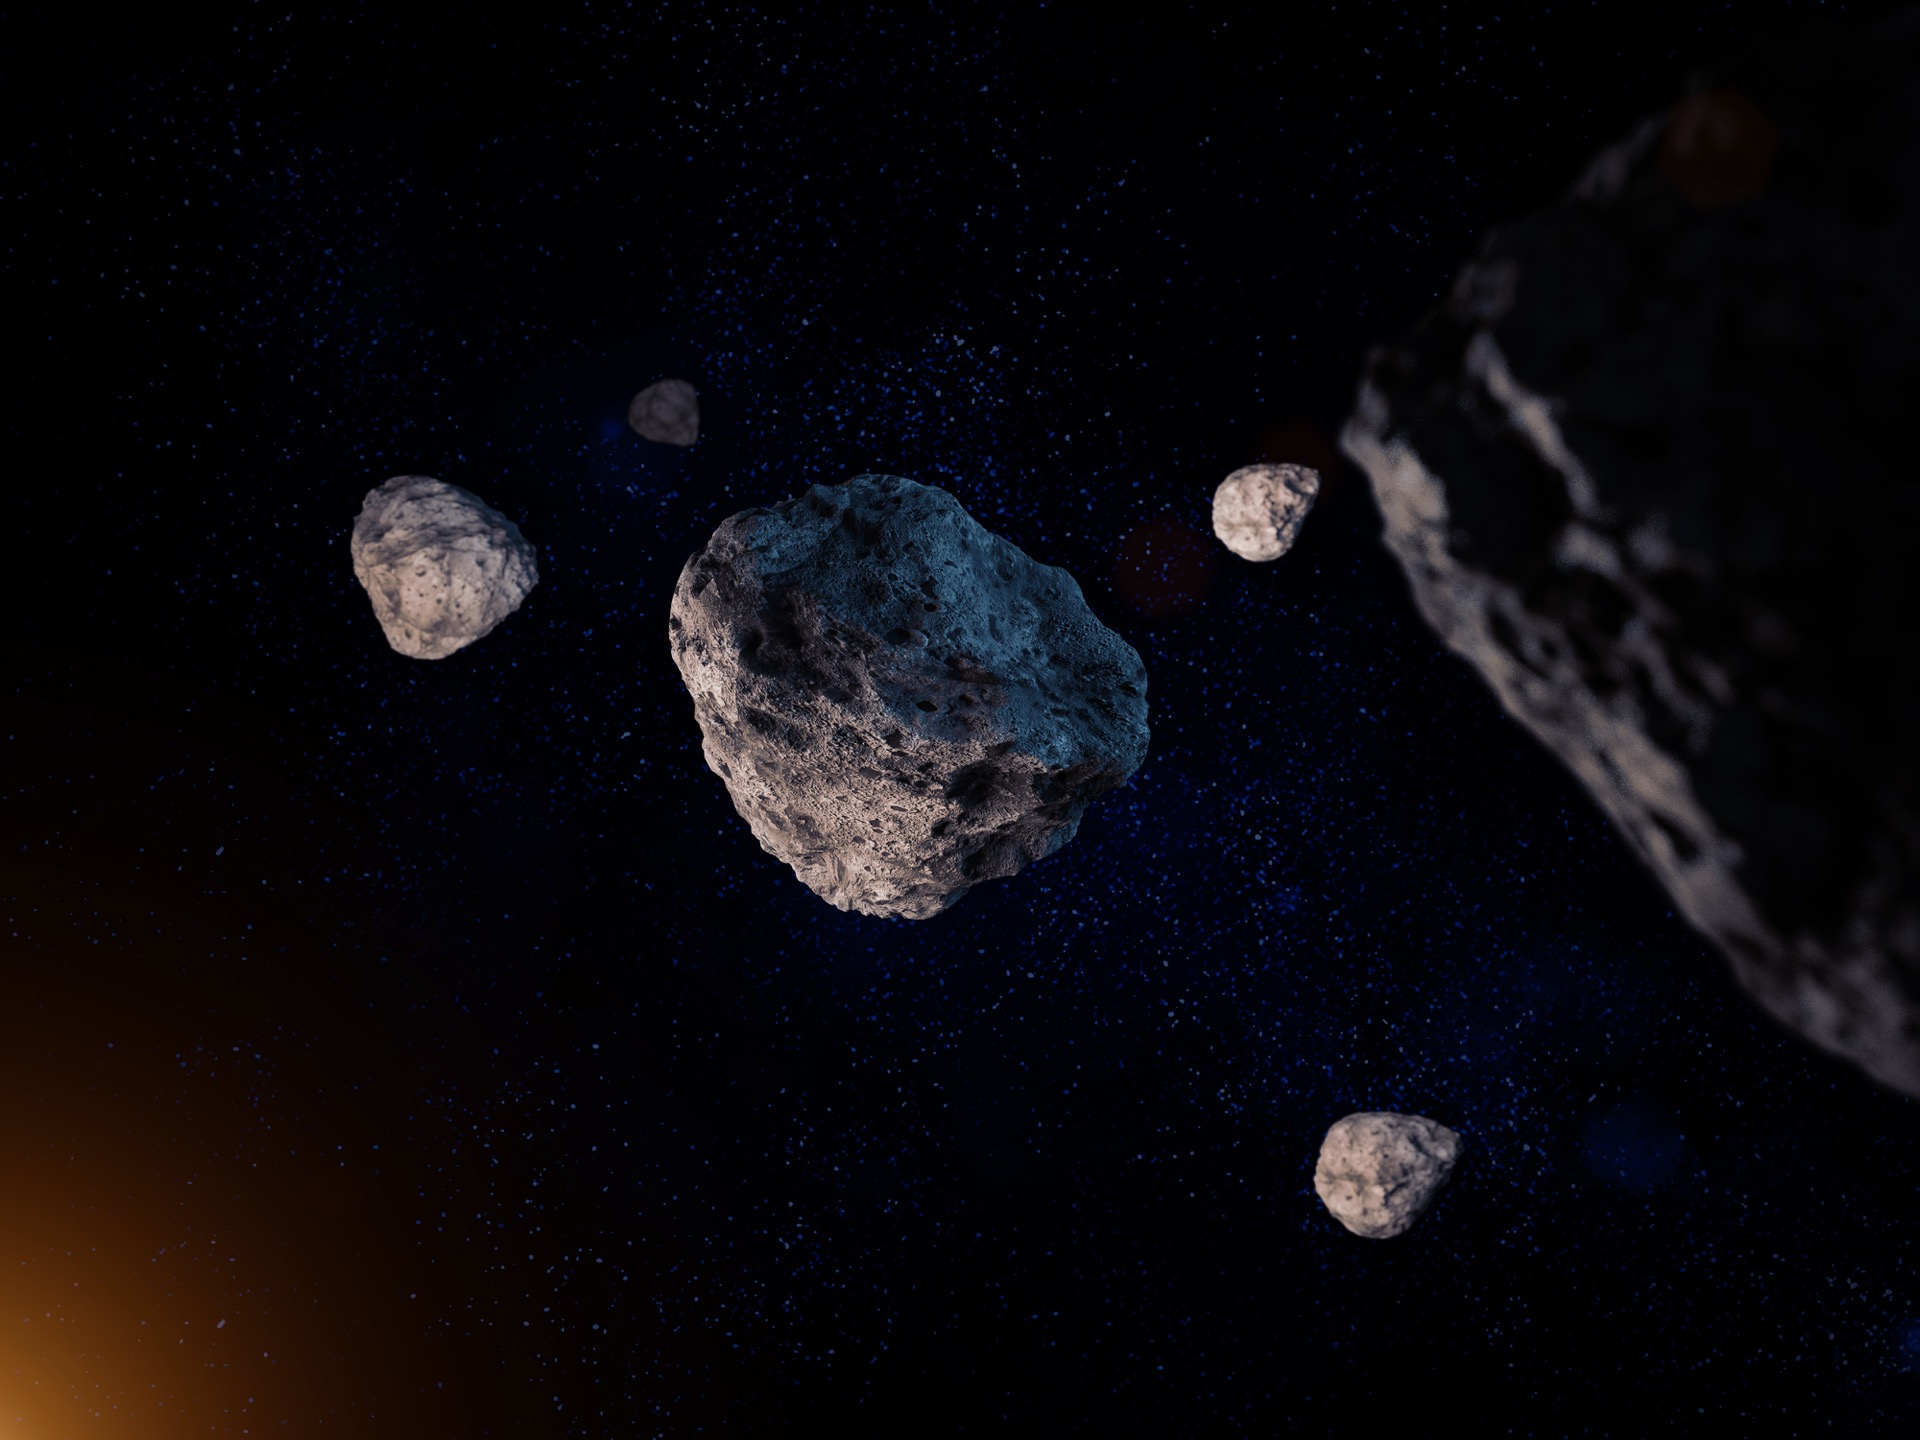 La ceinture principale d'astéroïdes regorge d'astéroïdes inhabituels dont le plus intrigant&nbsp;est Elektra : une troisième lune vient d'être découverte en orbite autour.&nbsp;© trahko, Adobe Stock